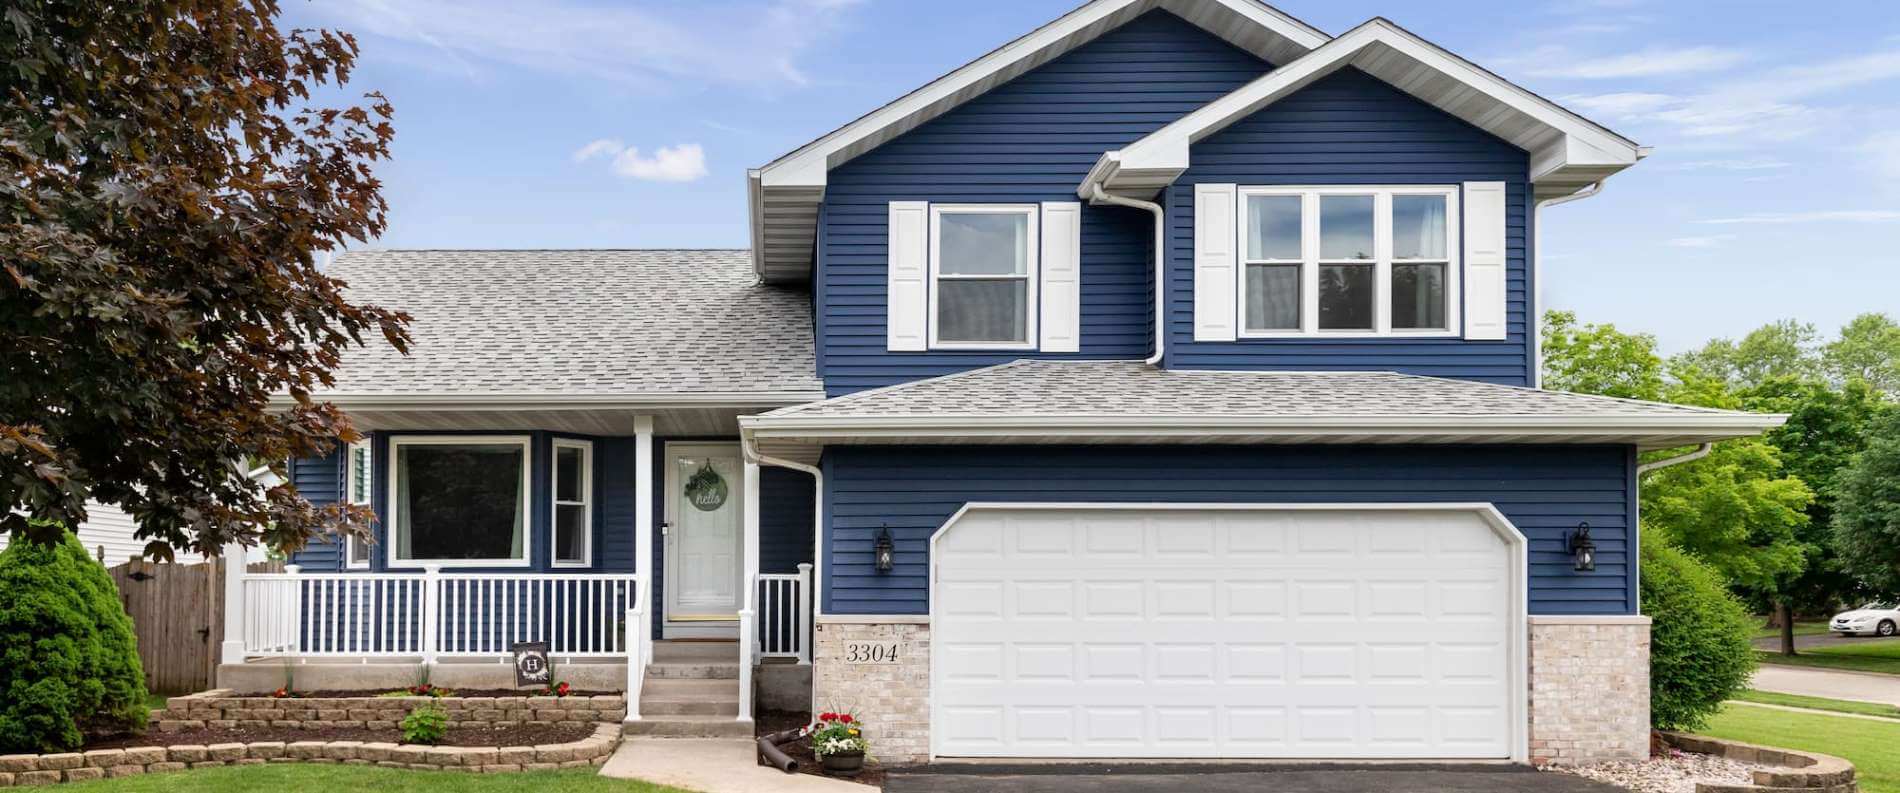 Nice Blue House with garage door